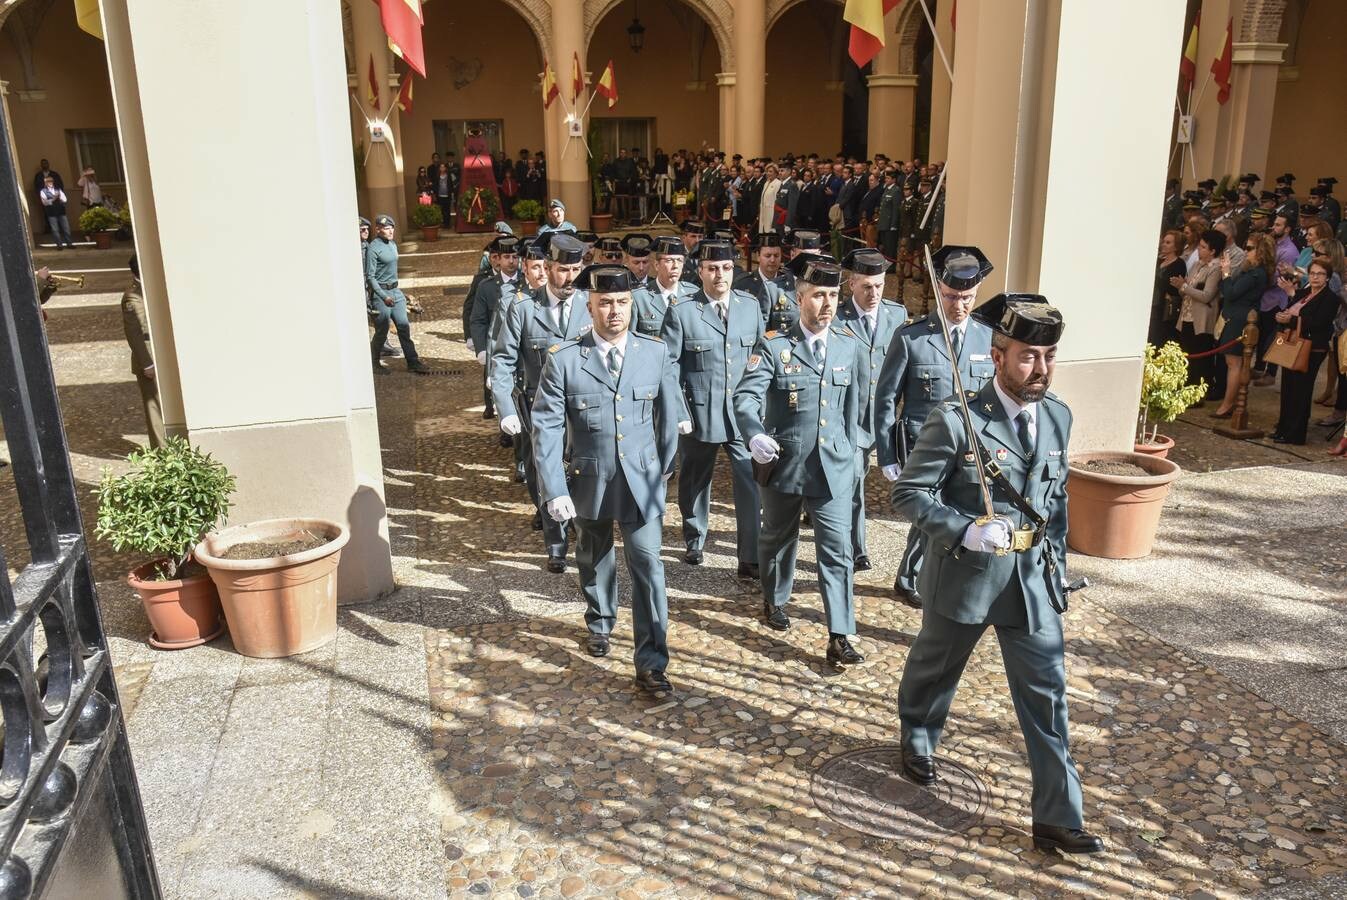 Celebración del 174 aniversario de la Guardia Civil en el Acuartelamiento de Santo Domingo en Badajoz